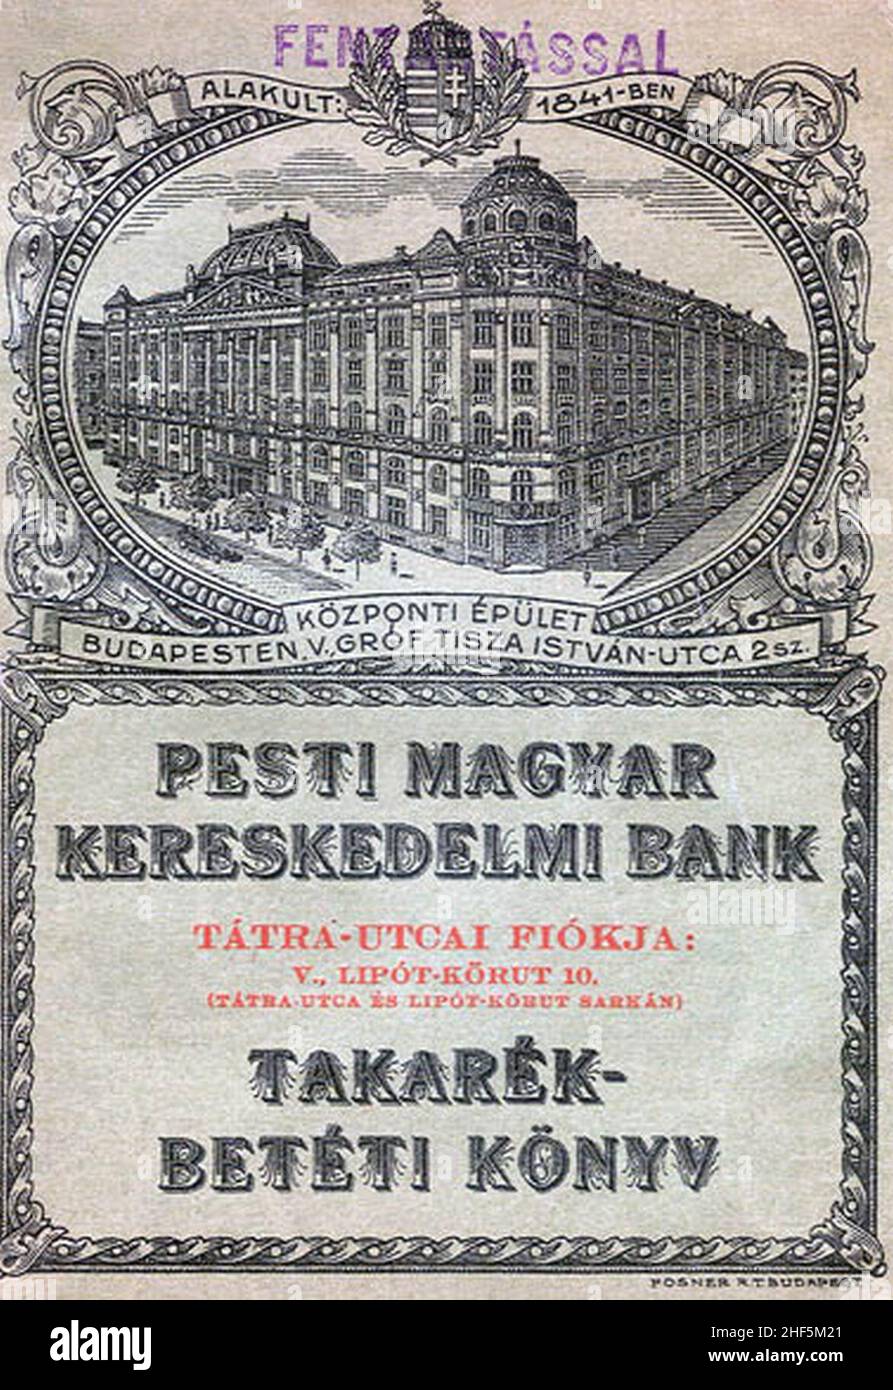 Magyar kereskedelmi bank hi-res stock photography and images - Alamy